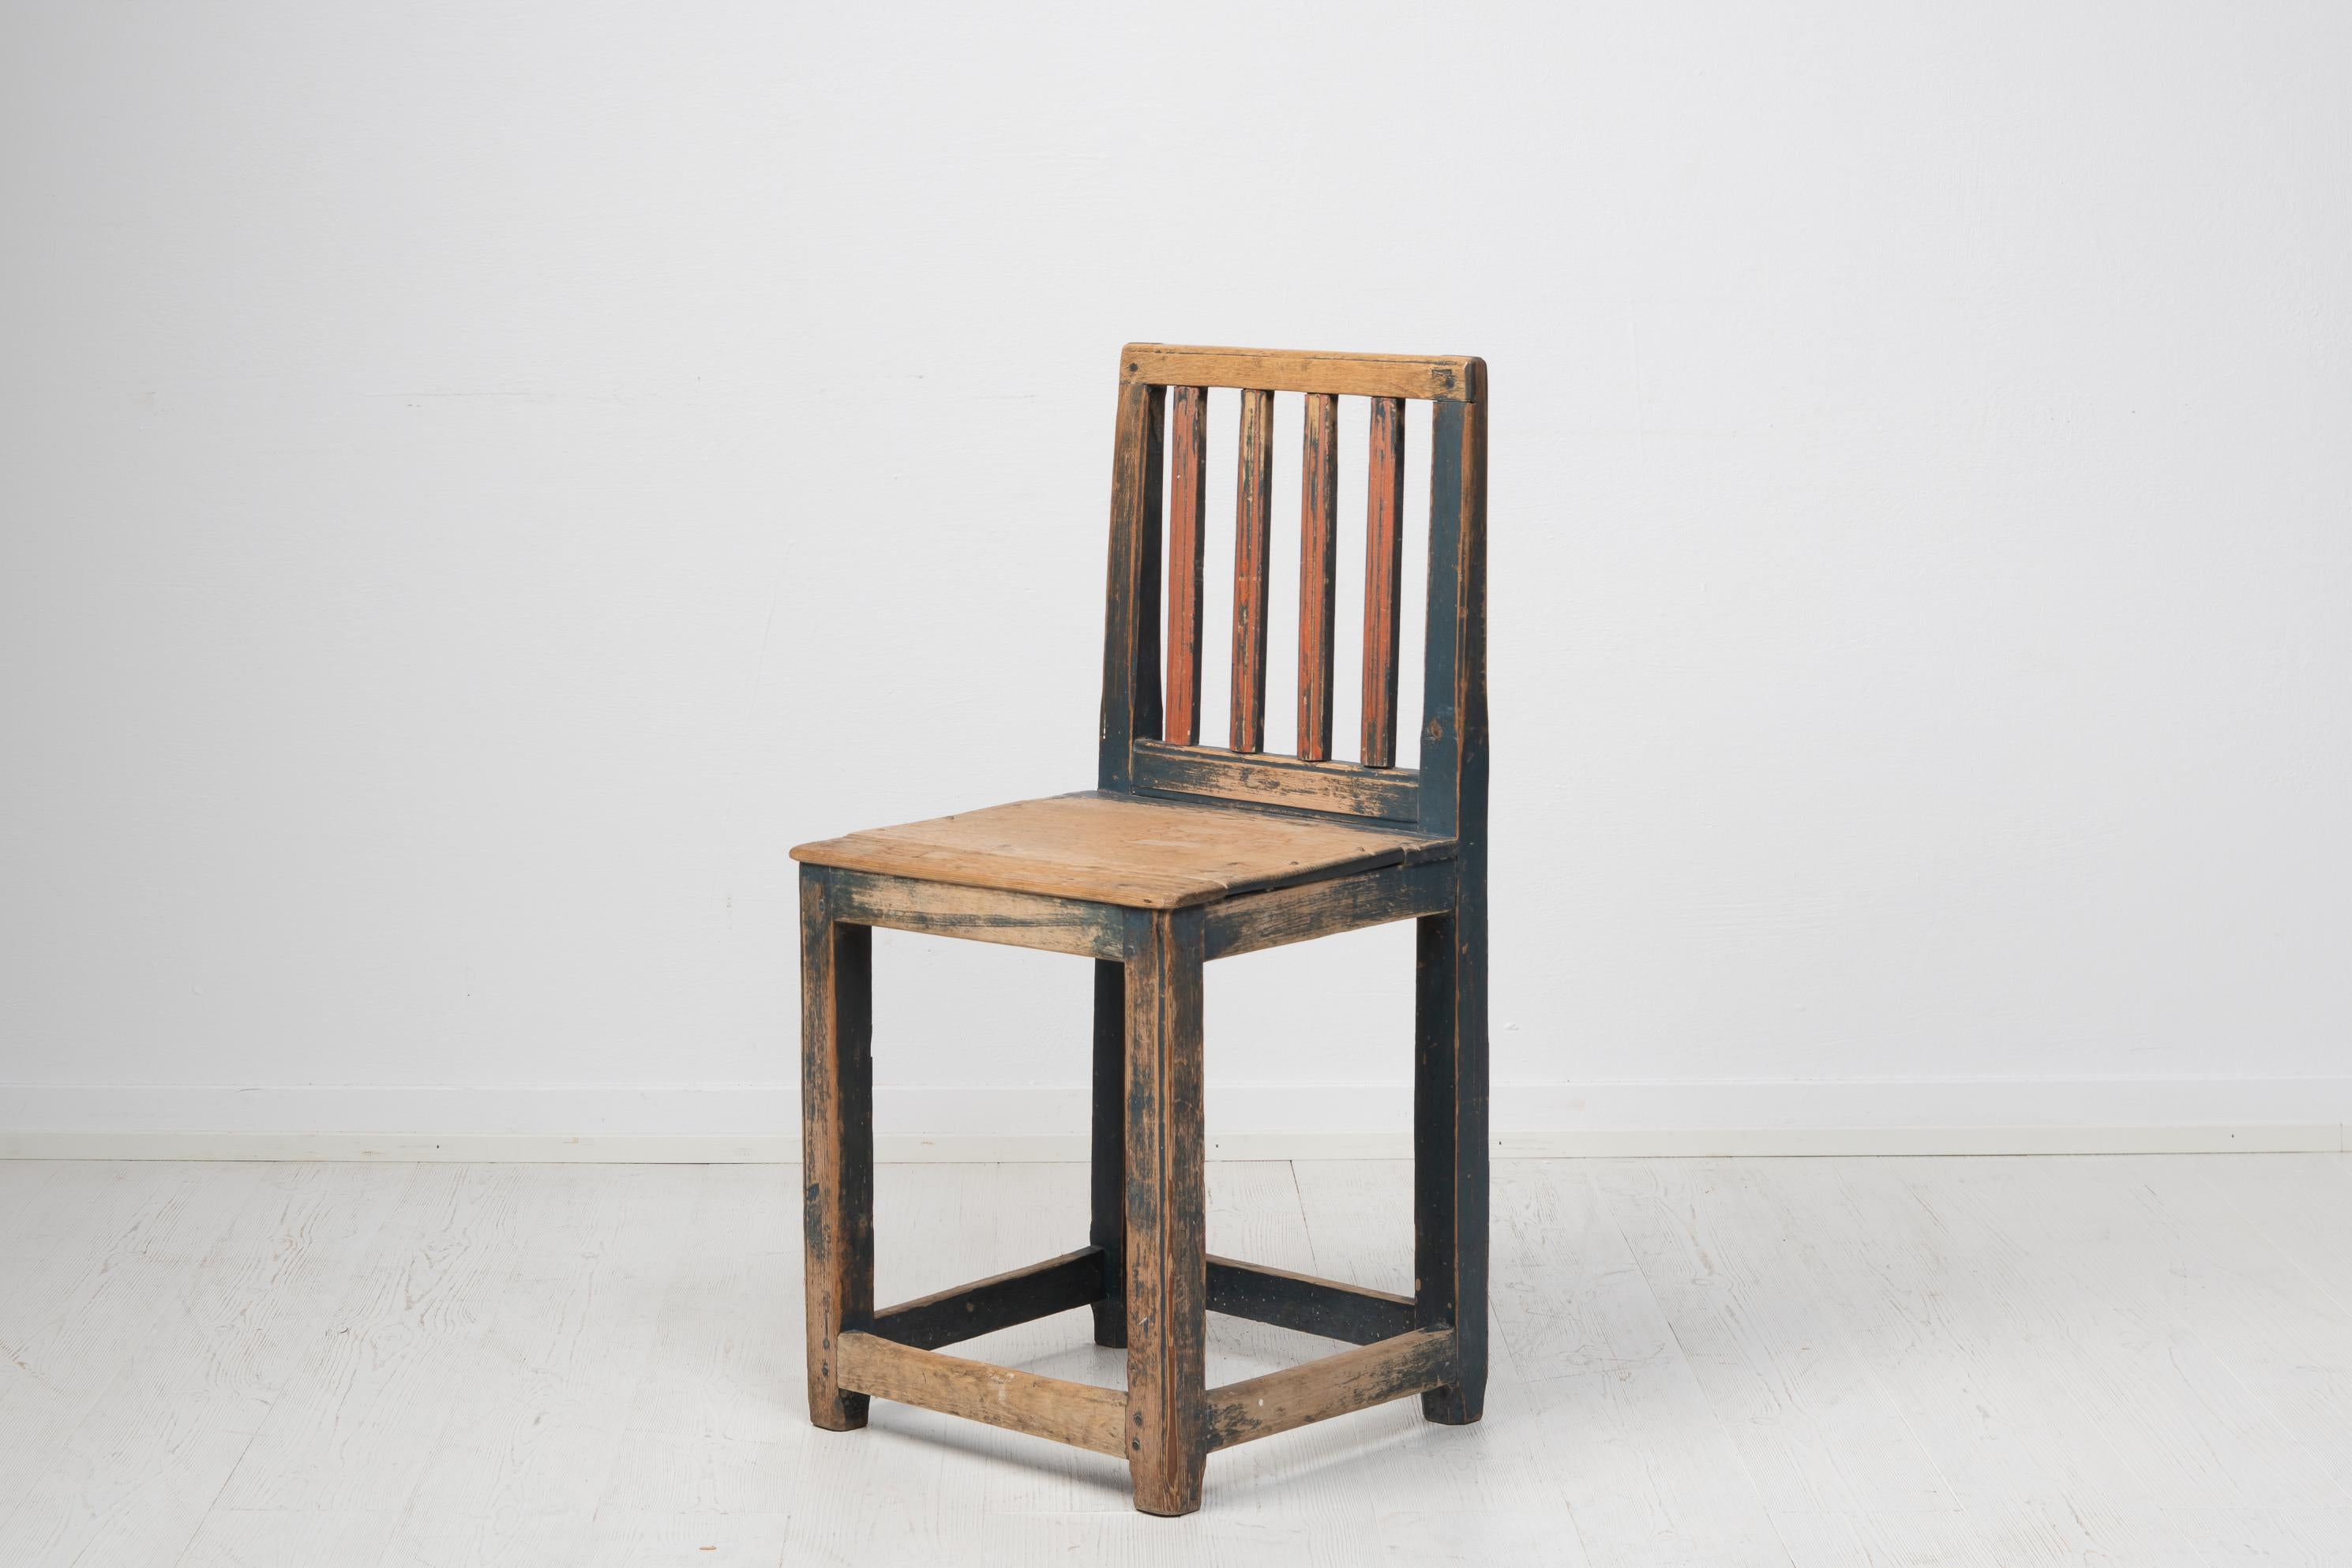 Charmanter schwedischer Volkskunststuhl aus Hälsingland in Schweden. Der Stuhl wurde in den frühen 1800er Jahren aus schwedischer Kiefer gefertigt. Es hat die ursprüngliche Farbe, die im Laufe der Jahre natürlich beschädigt wurde. Die Beschädigungen